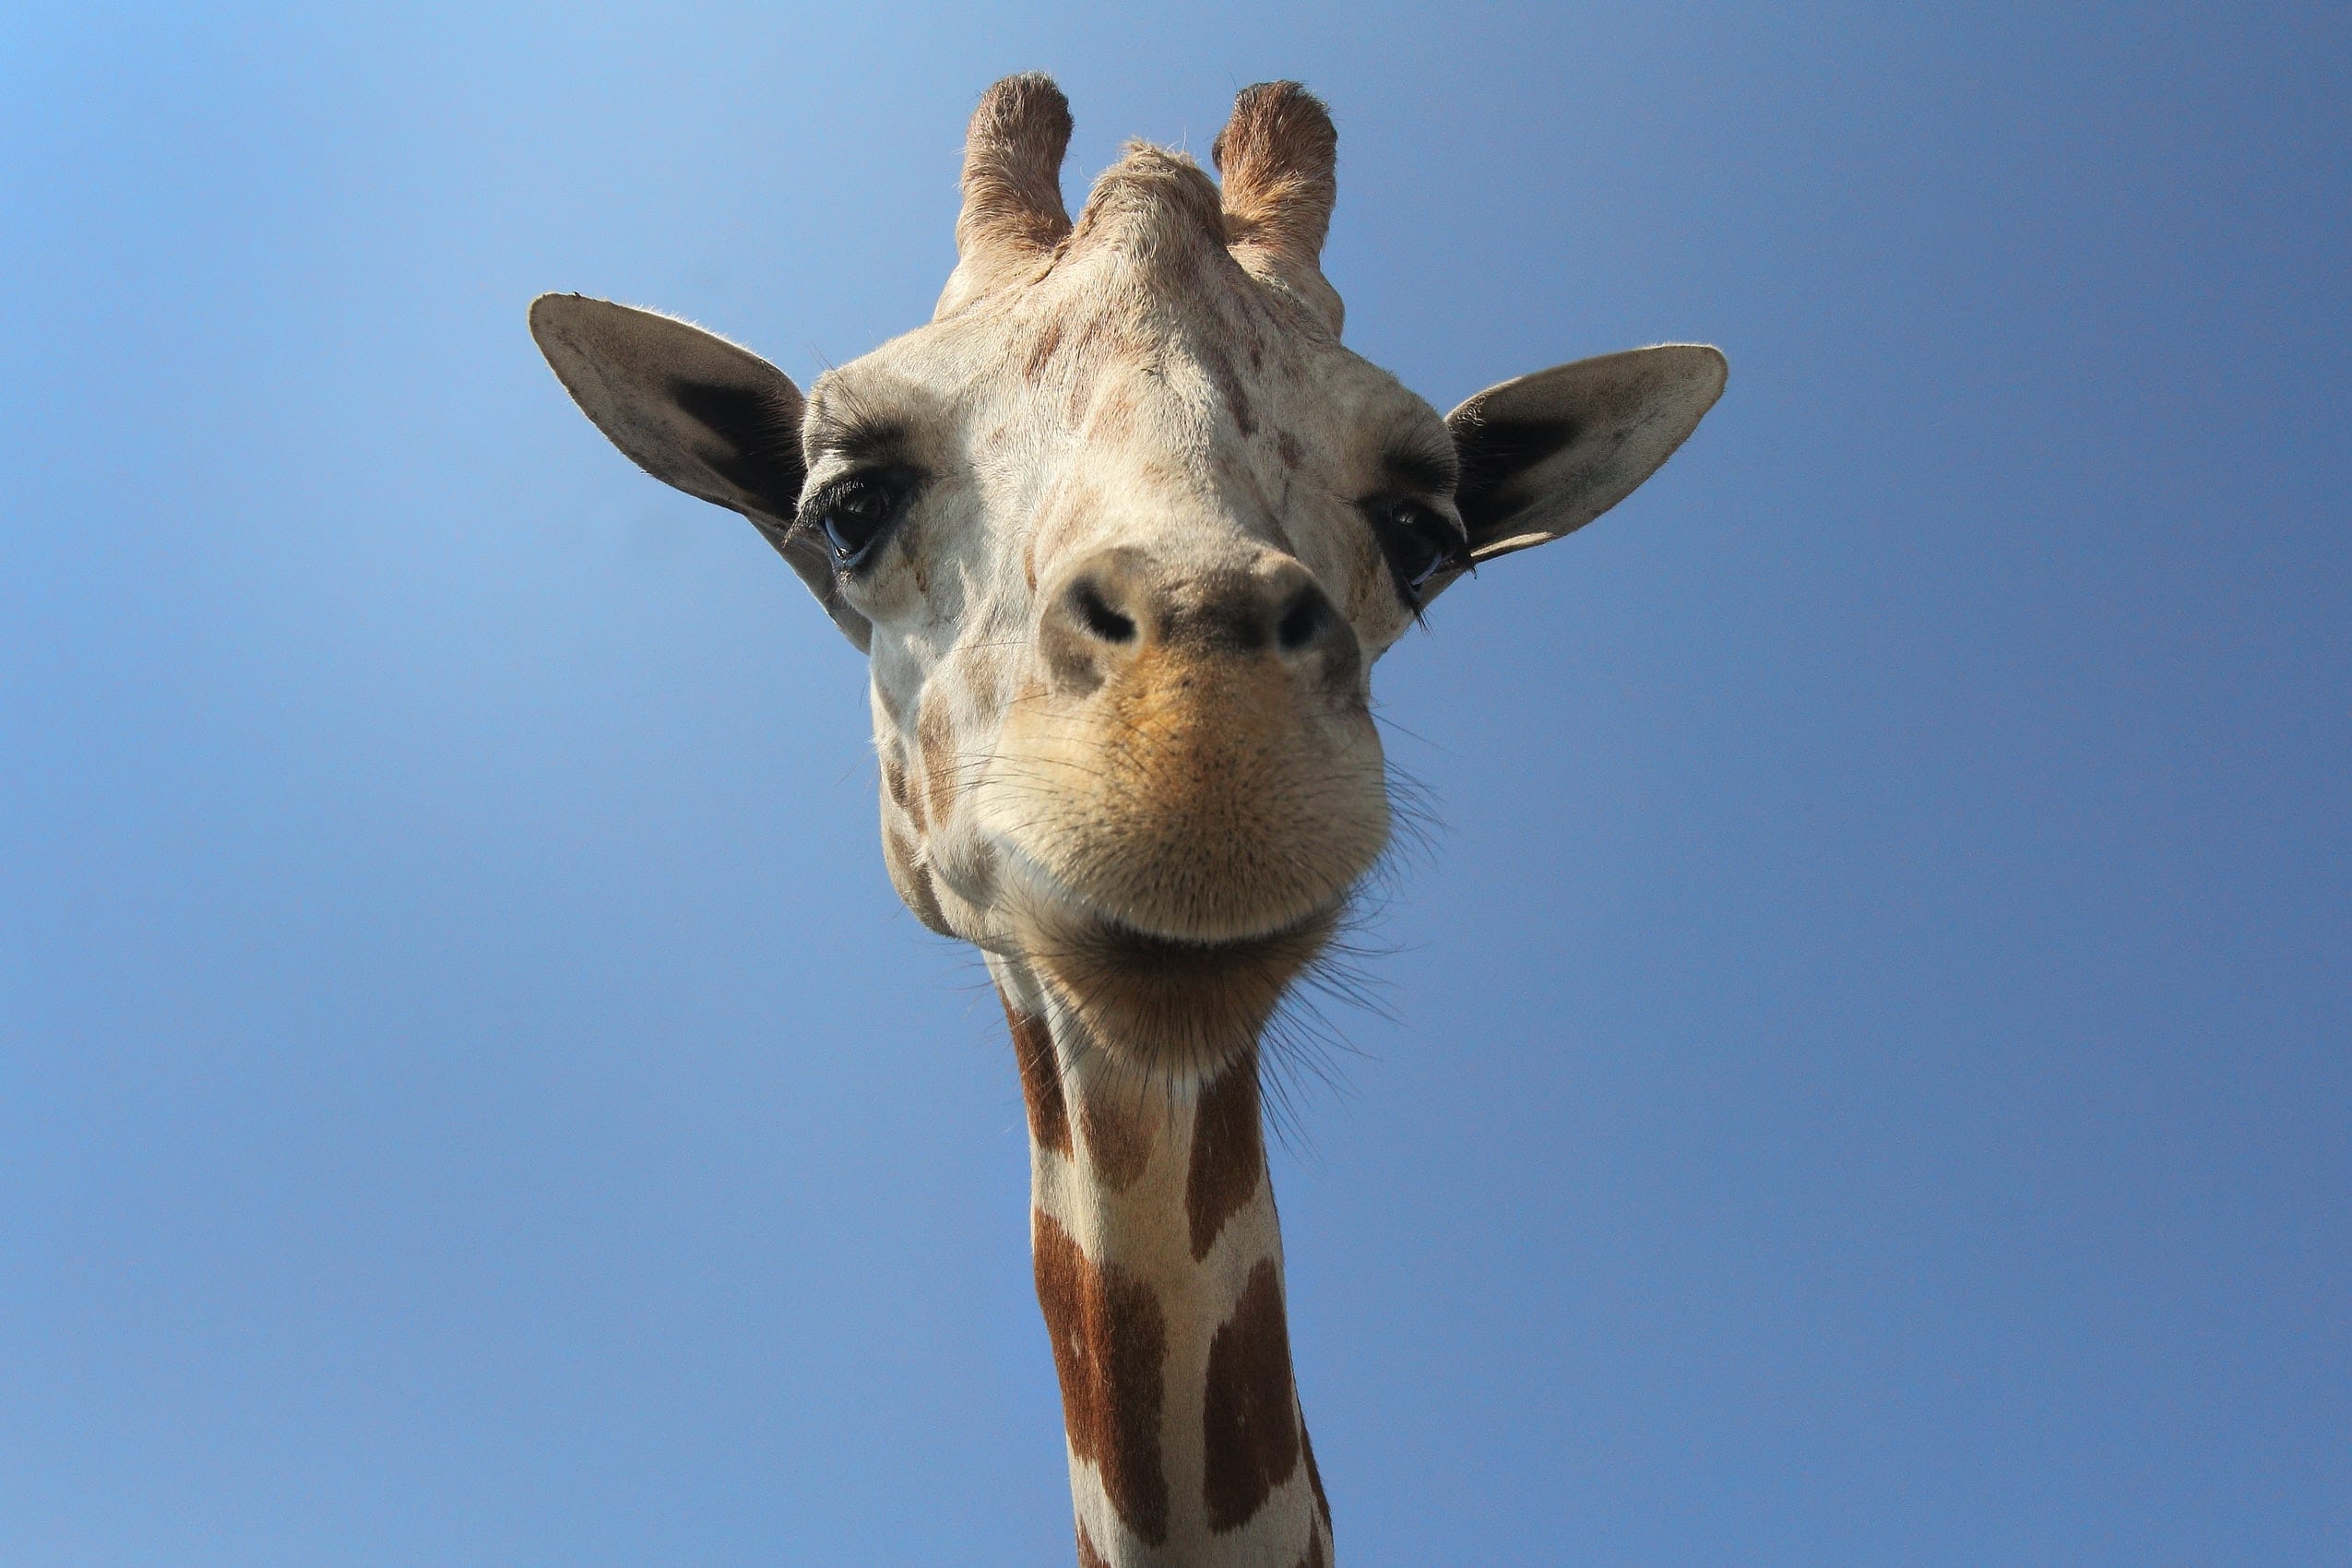 fun facts about Giraffes